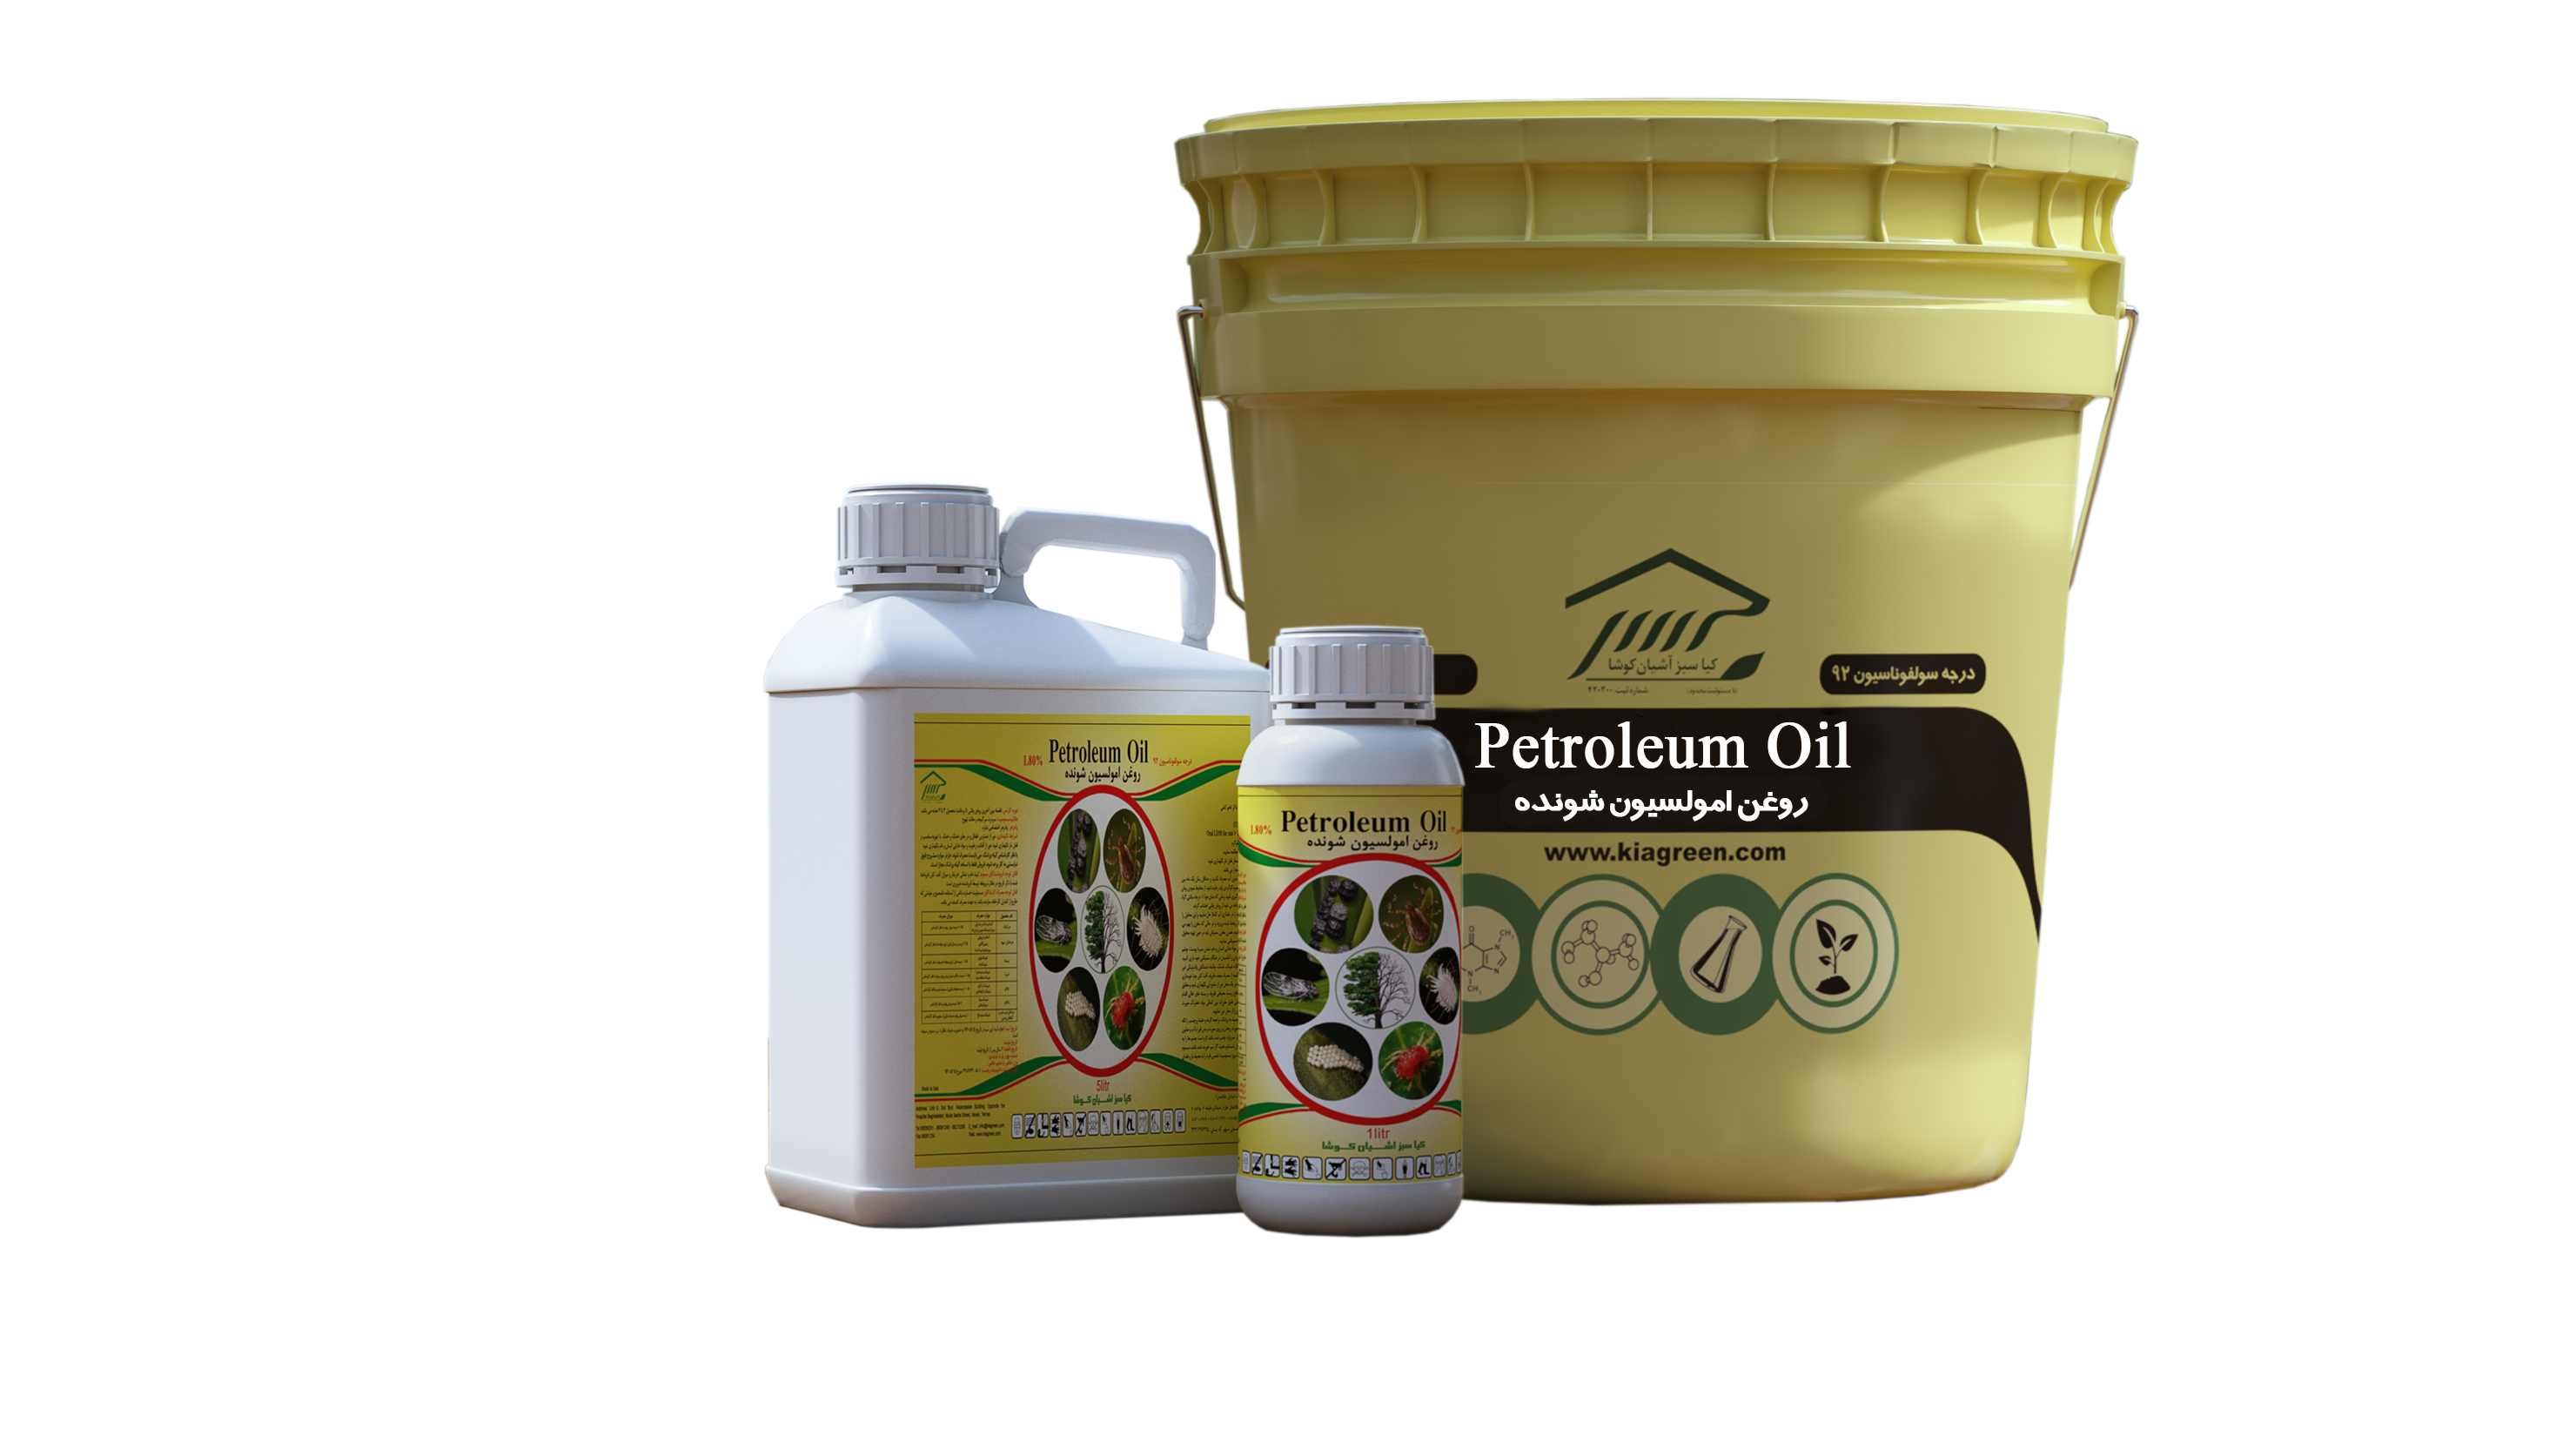 Petroleum oil